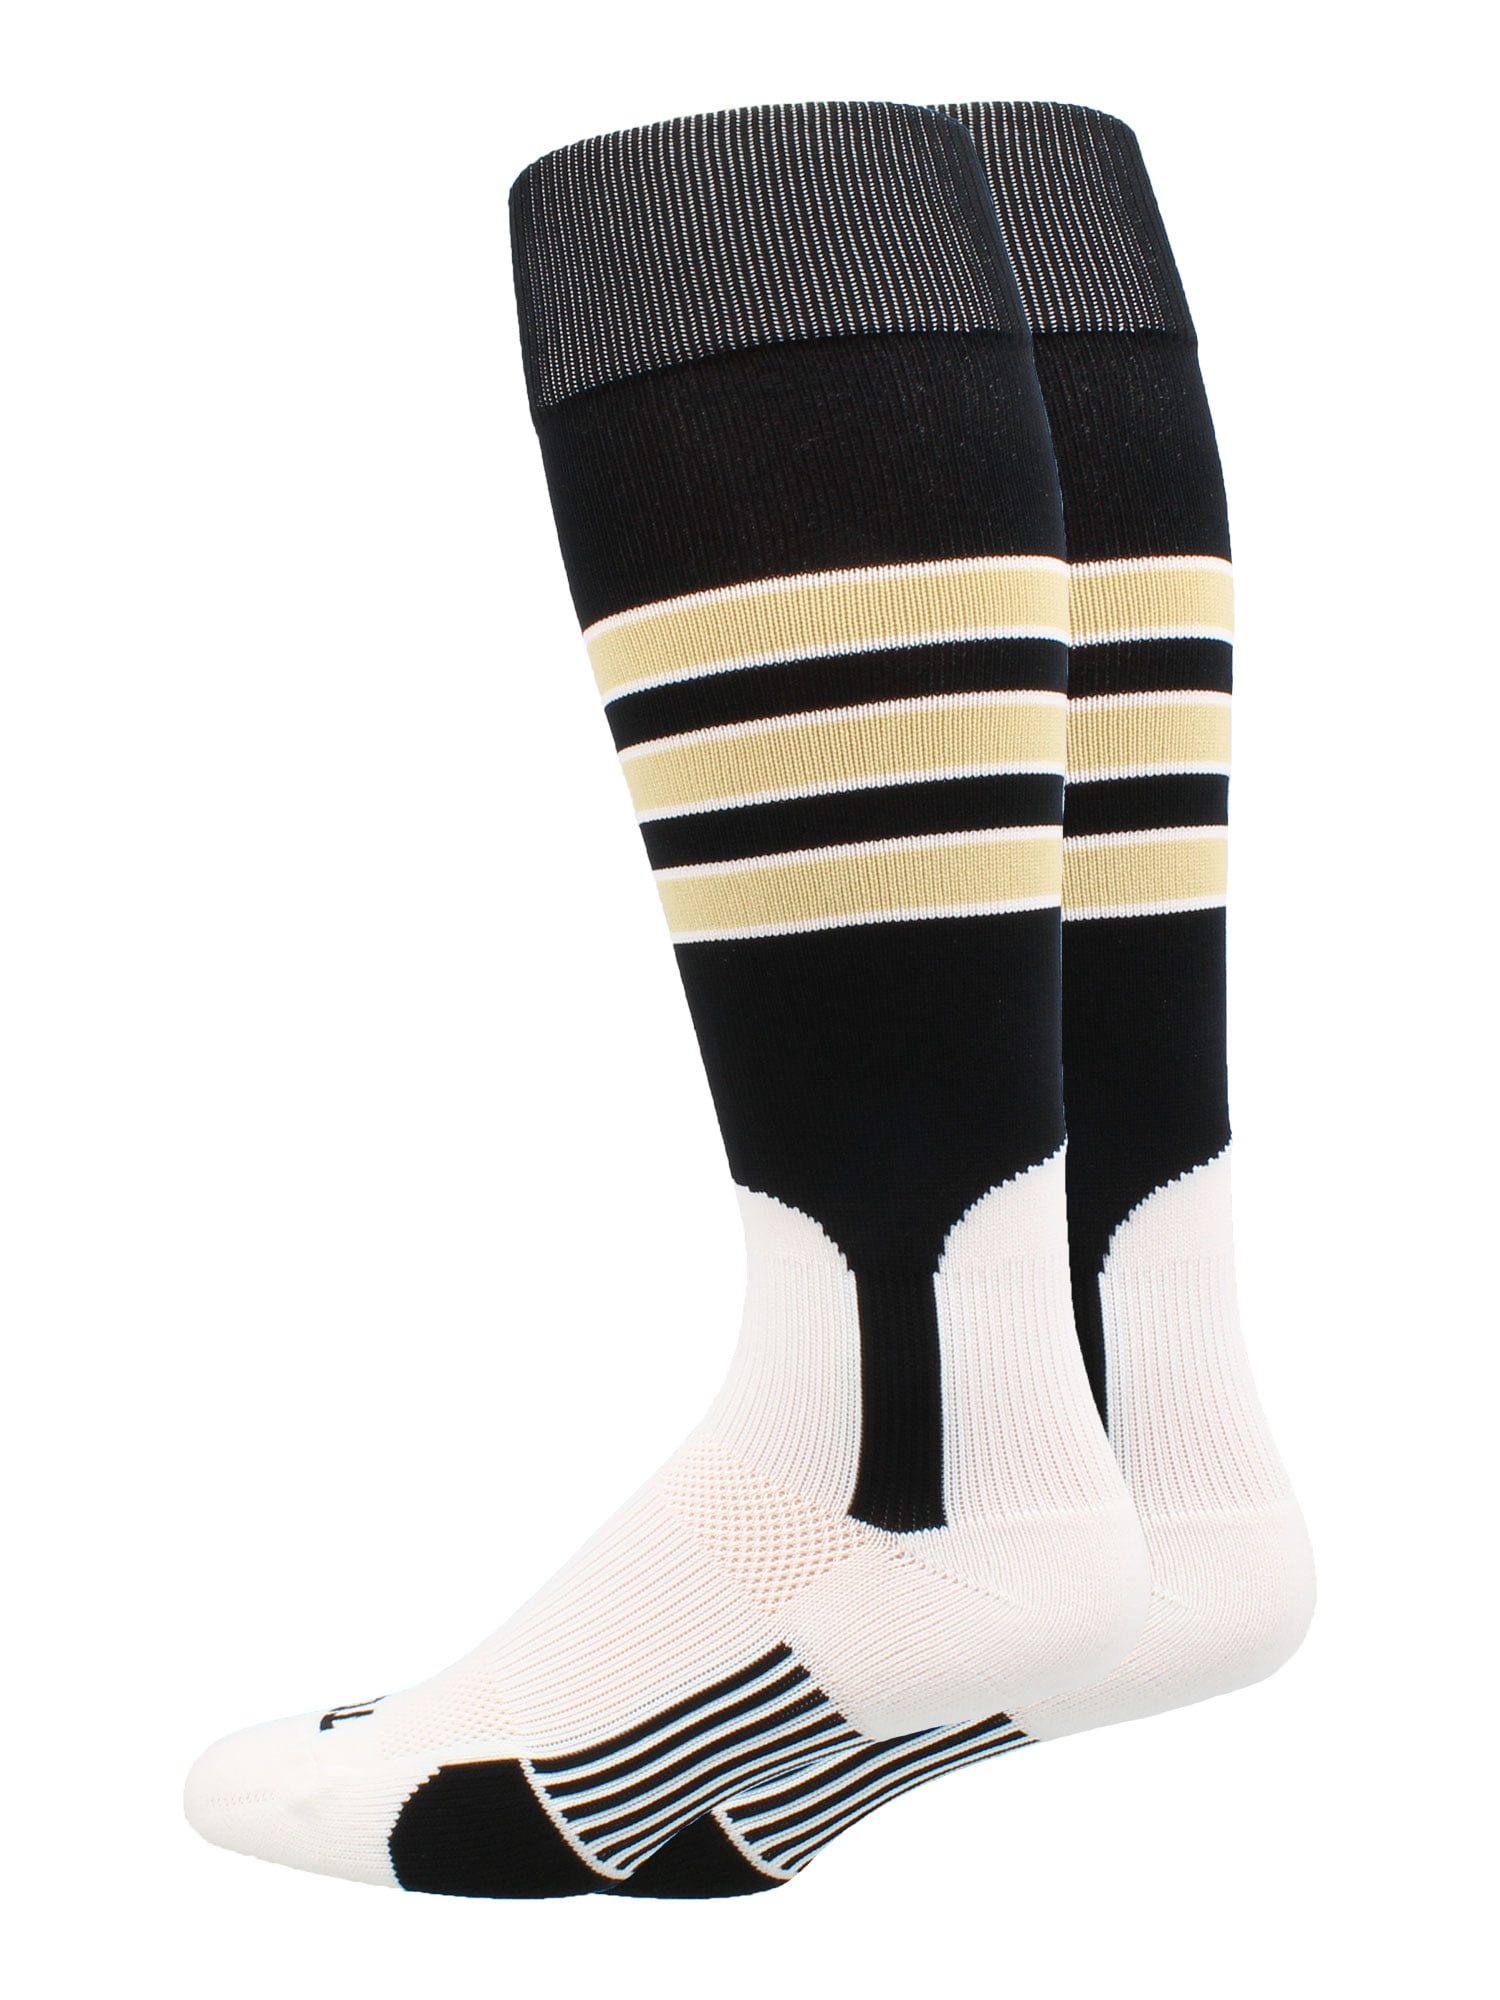 Vegas Gold TCK Elite Baseball Knee High Stirrup Socks B, 7in Black 